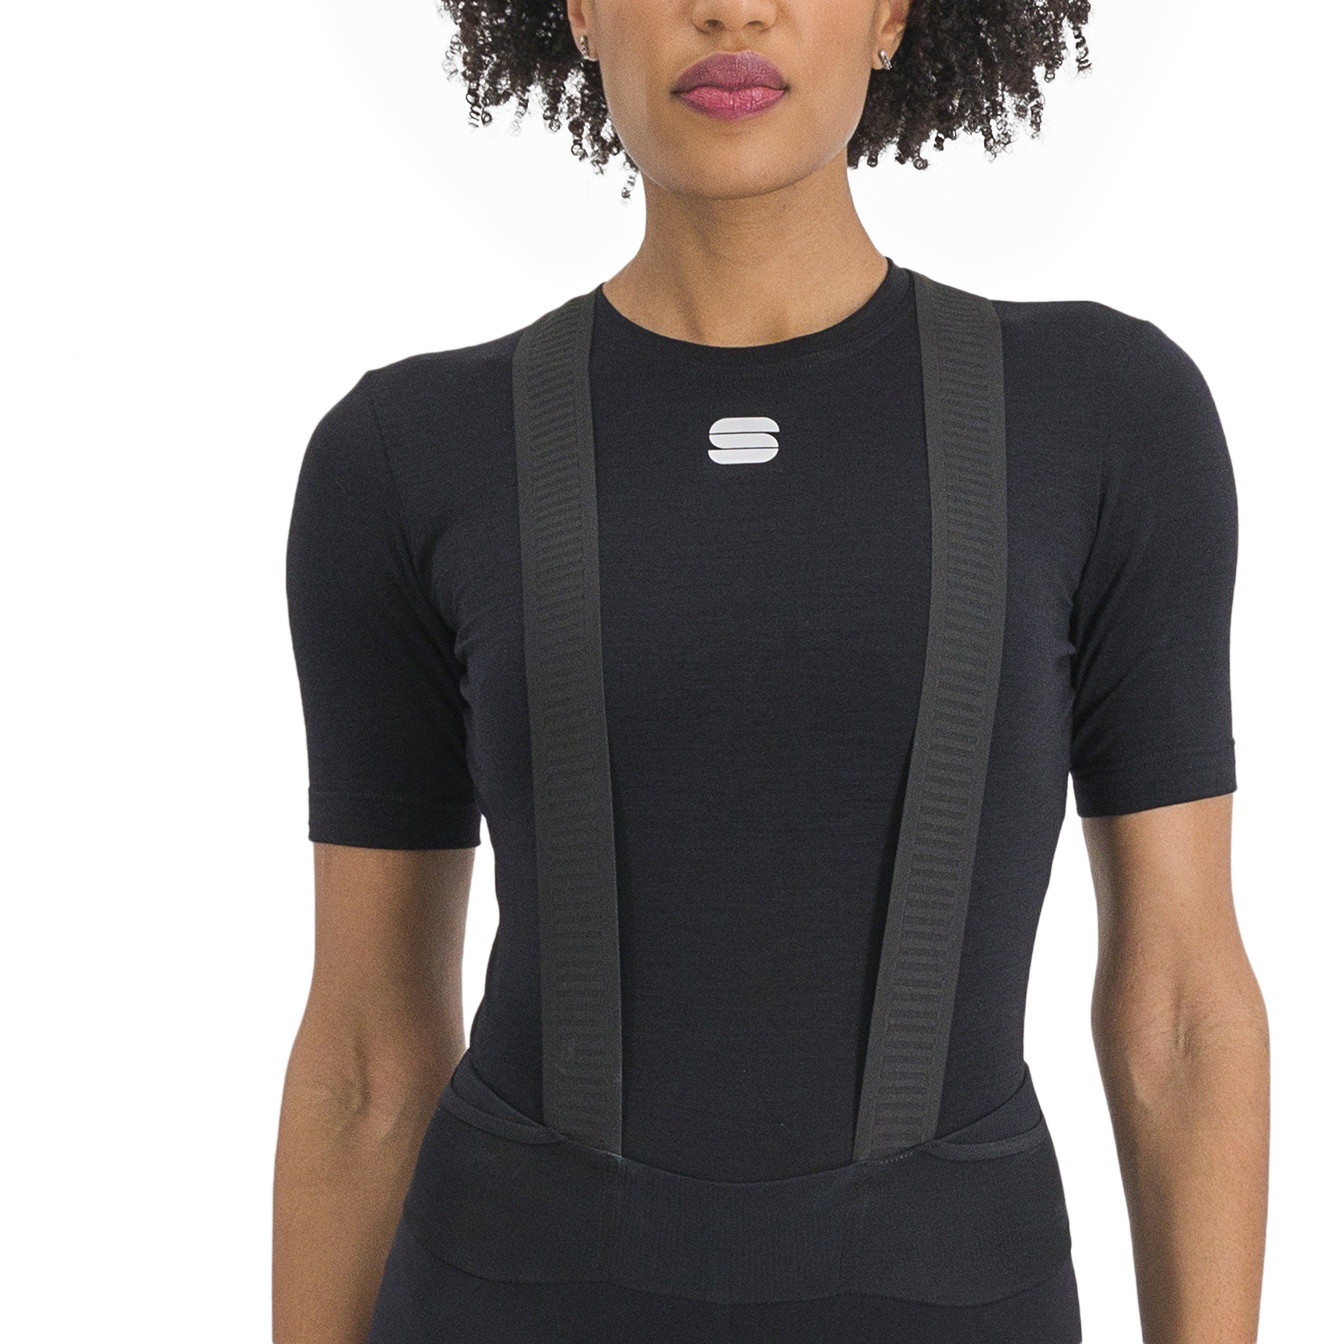 Produktbild von Sportful Merino Layer Damen Kurzarm-Unterhemd - 002 Schwarz